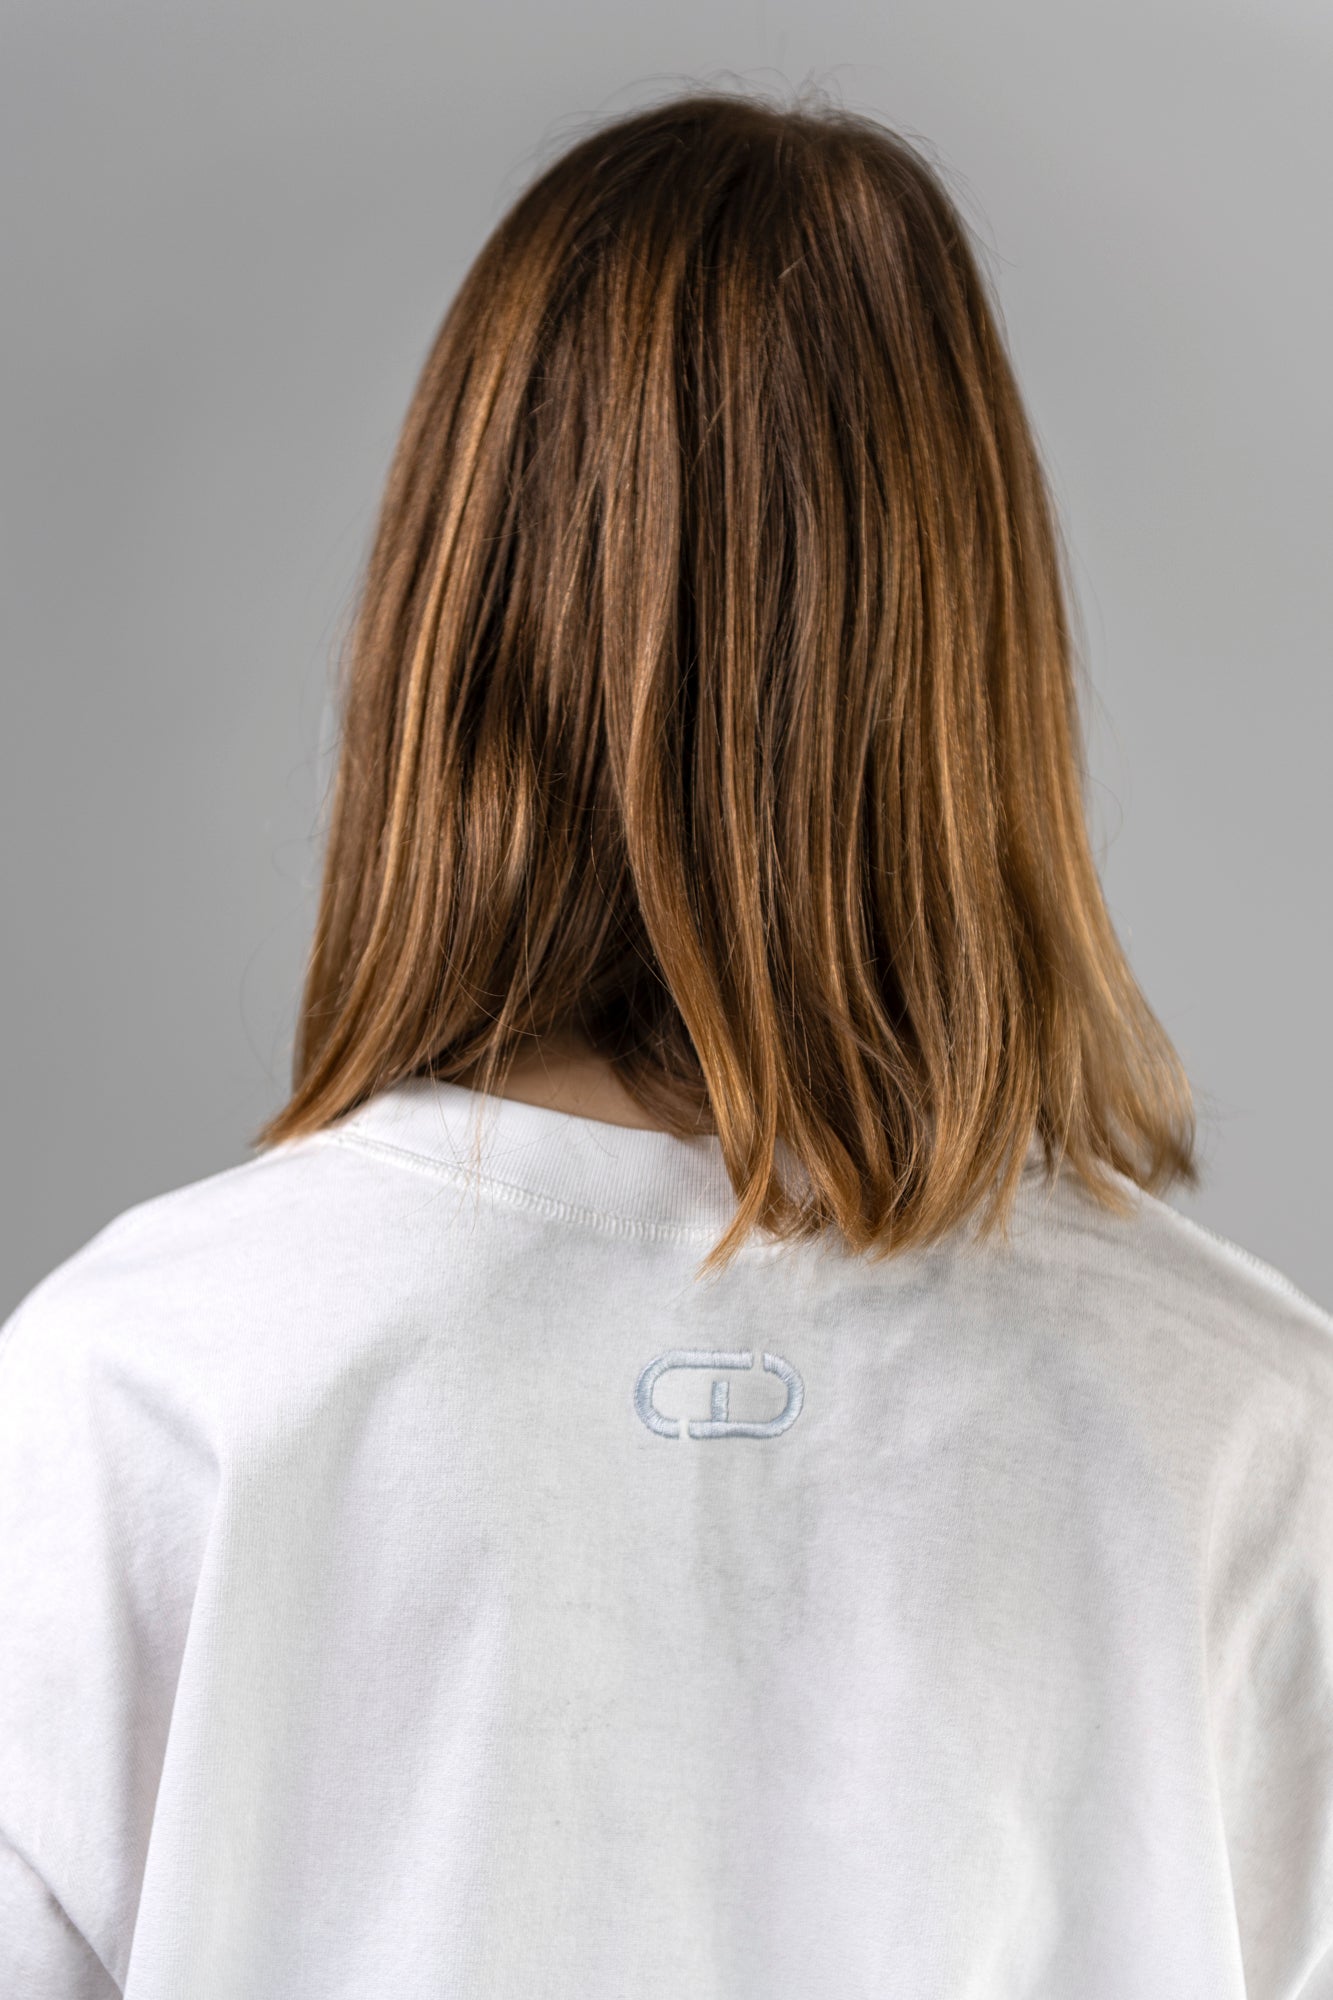 lactif-white-tshirt-female-back-detail